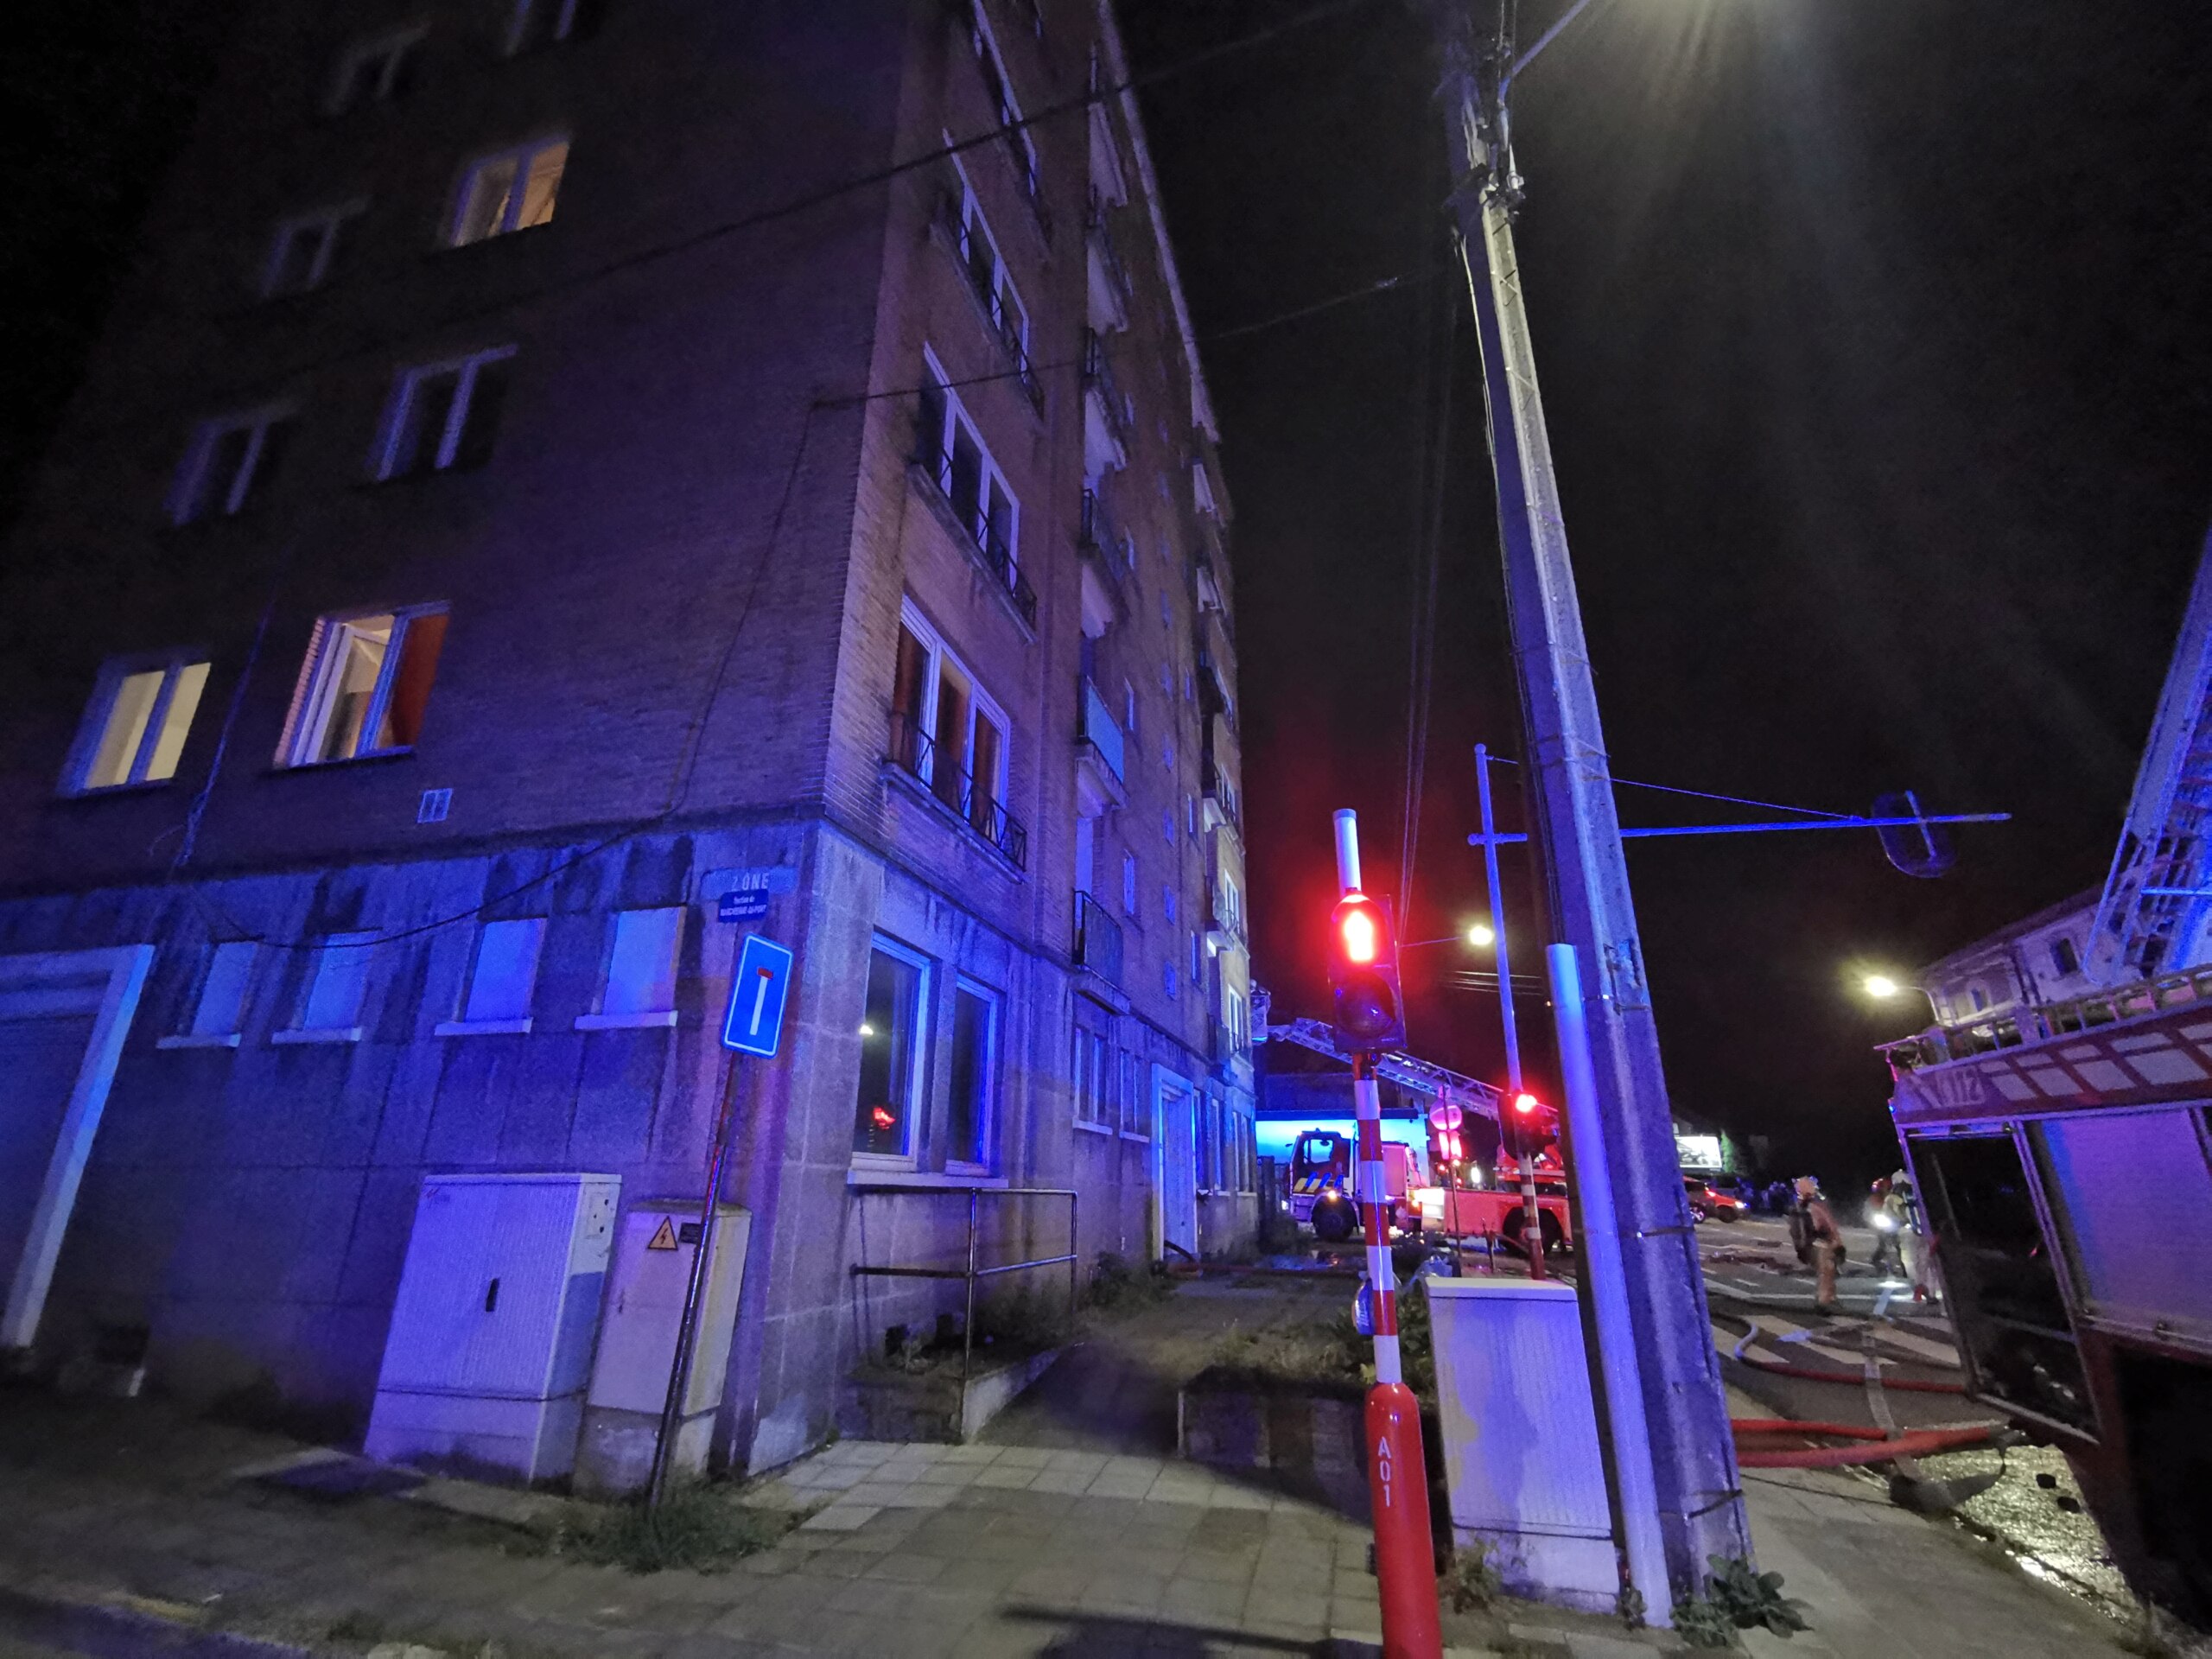 Incendie au 3e étage d'un building de Marchienne (7-09-2021 + photos) Img_2545